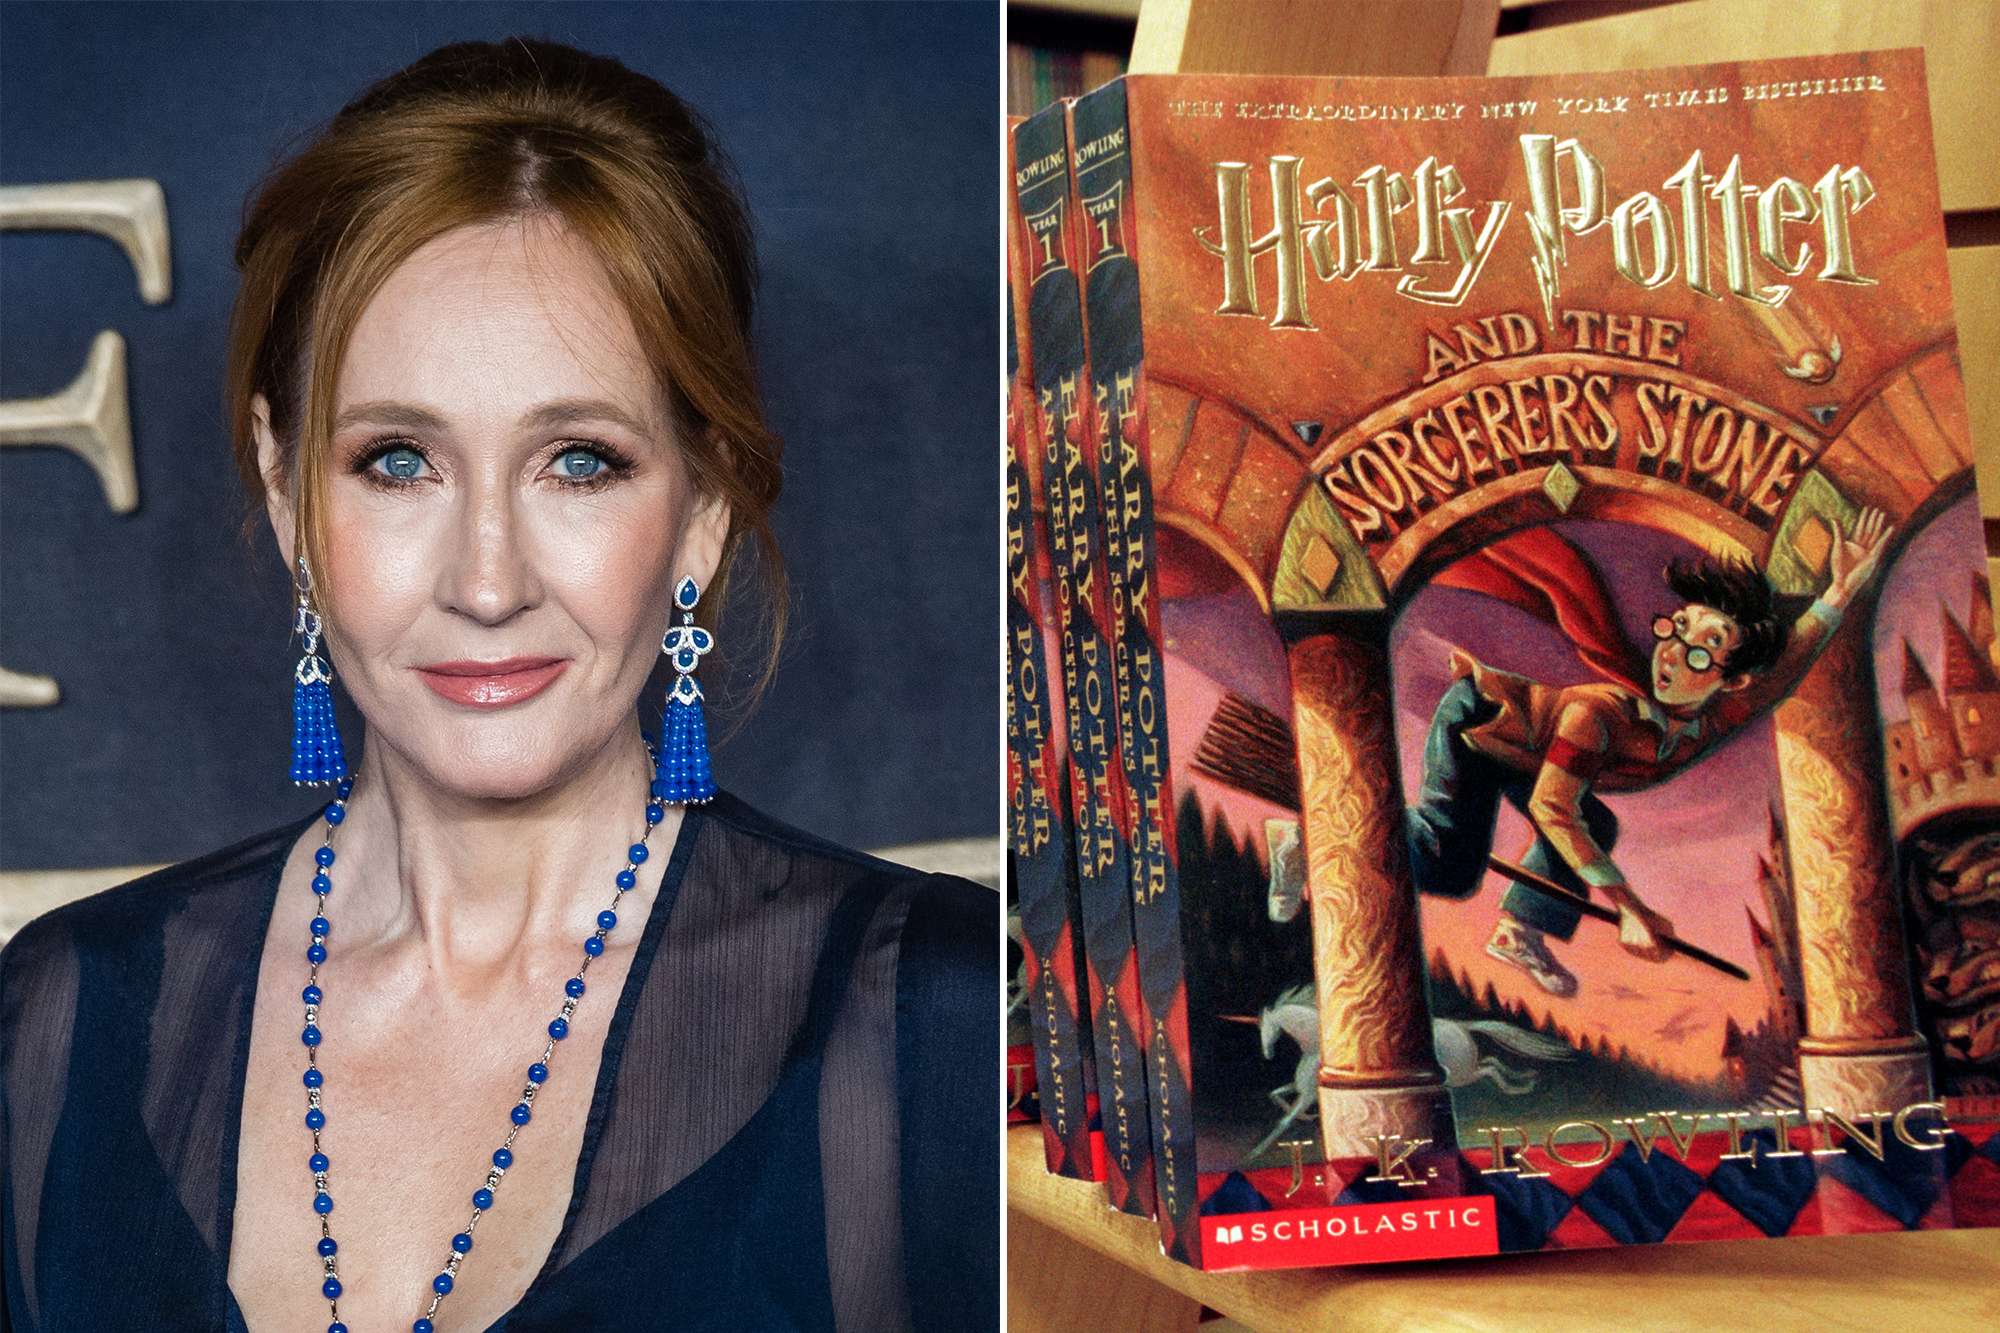 J.K. Rowling is releasing 4 new Harry Potter books online